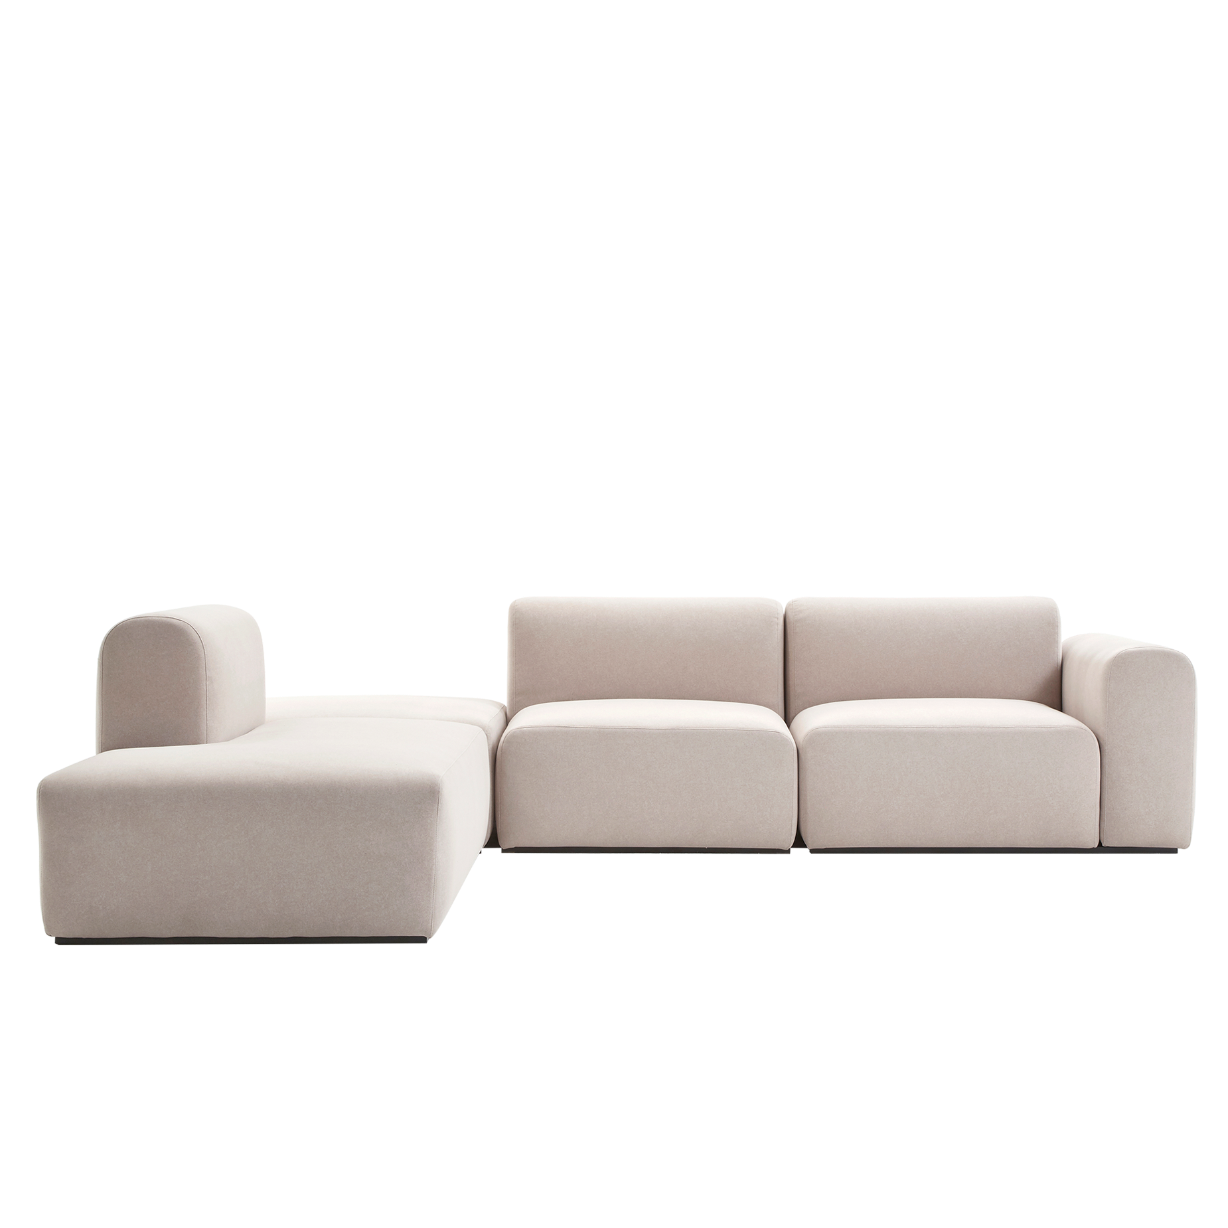 (주)도이치 전시품 판매(일산)       DOICH ® Aquaclean PEN3 modular couch sofa  도이치 Pen3  4인 카우치 소파 ( 카우치+1인+1.5인) ) + 스툴 /(스페인 아쿠아클린)  [3주 주문제작]